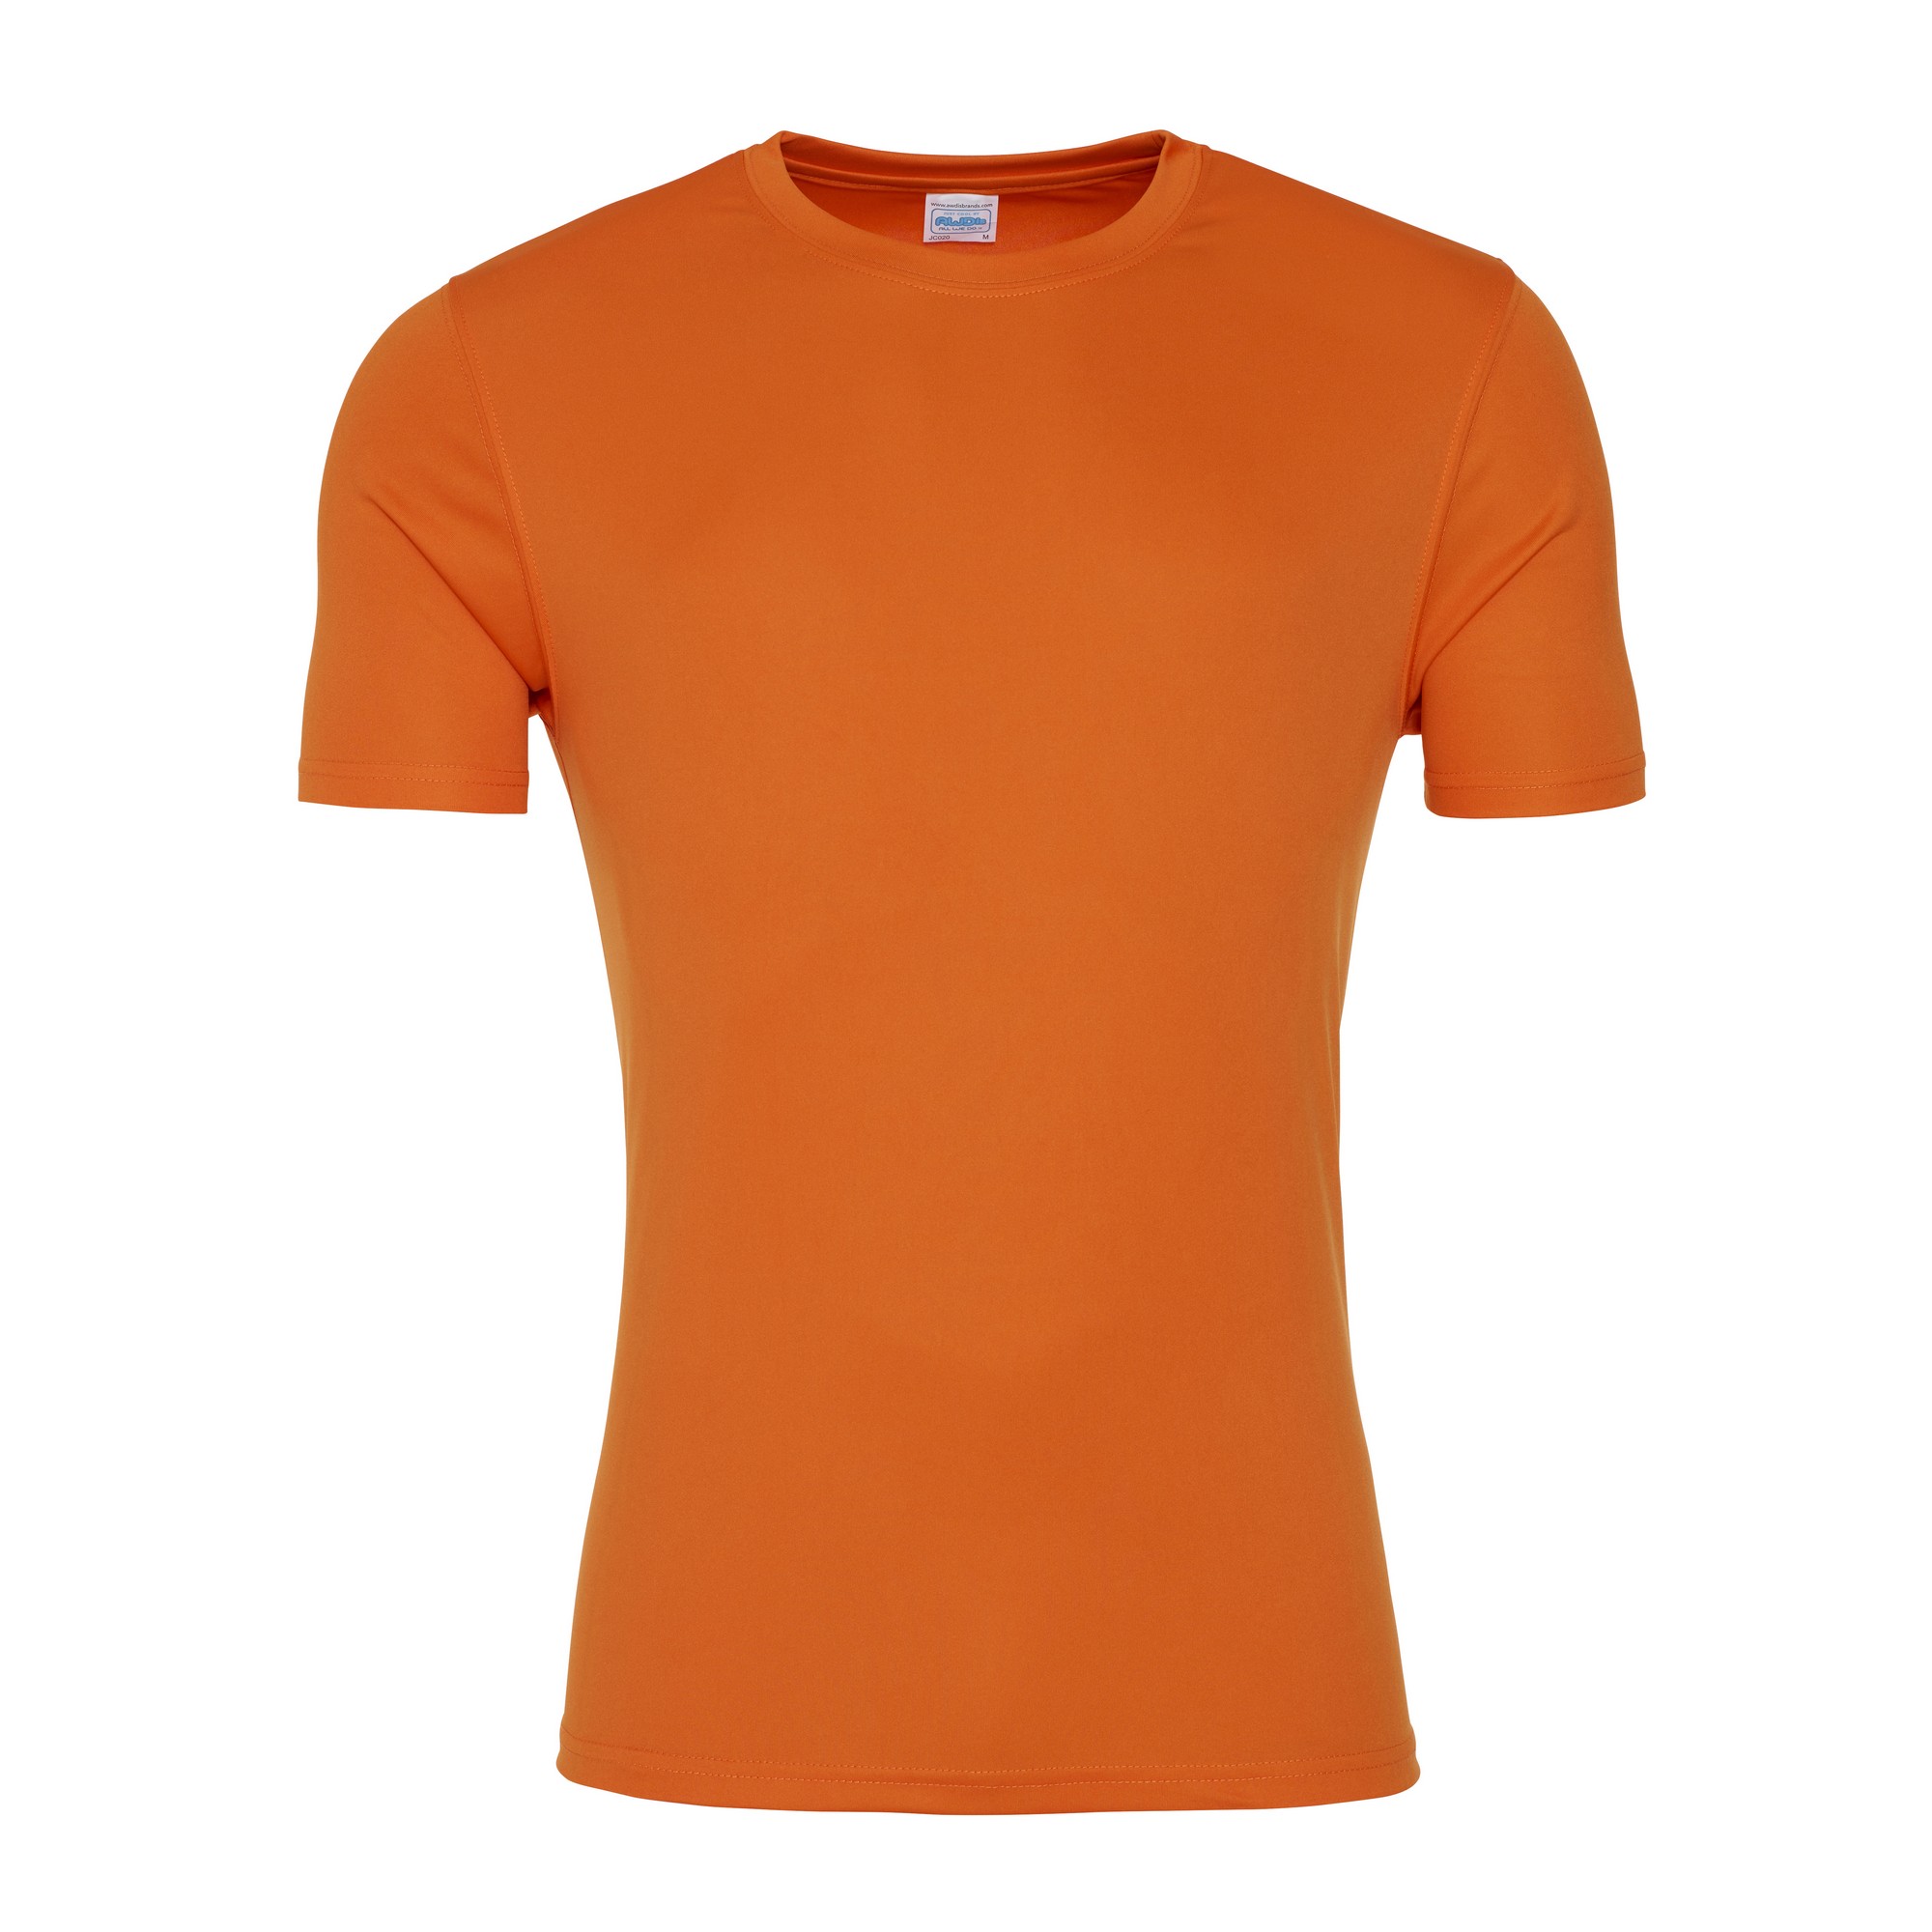 T-shirt Smooth Just Cool Awdis - naranja - 